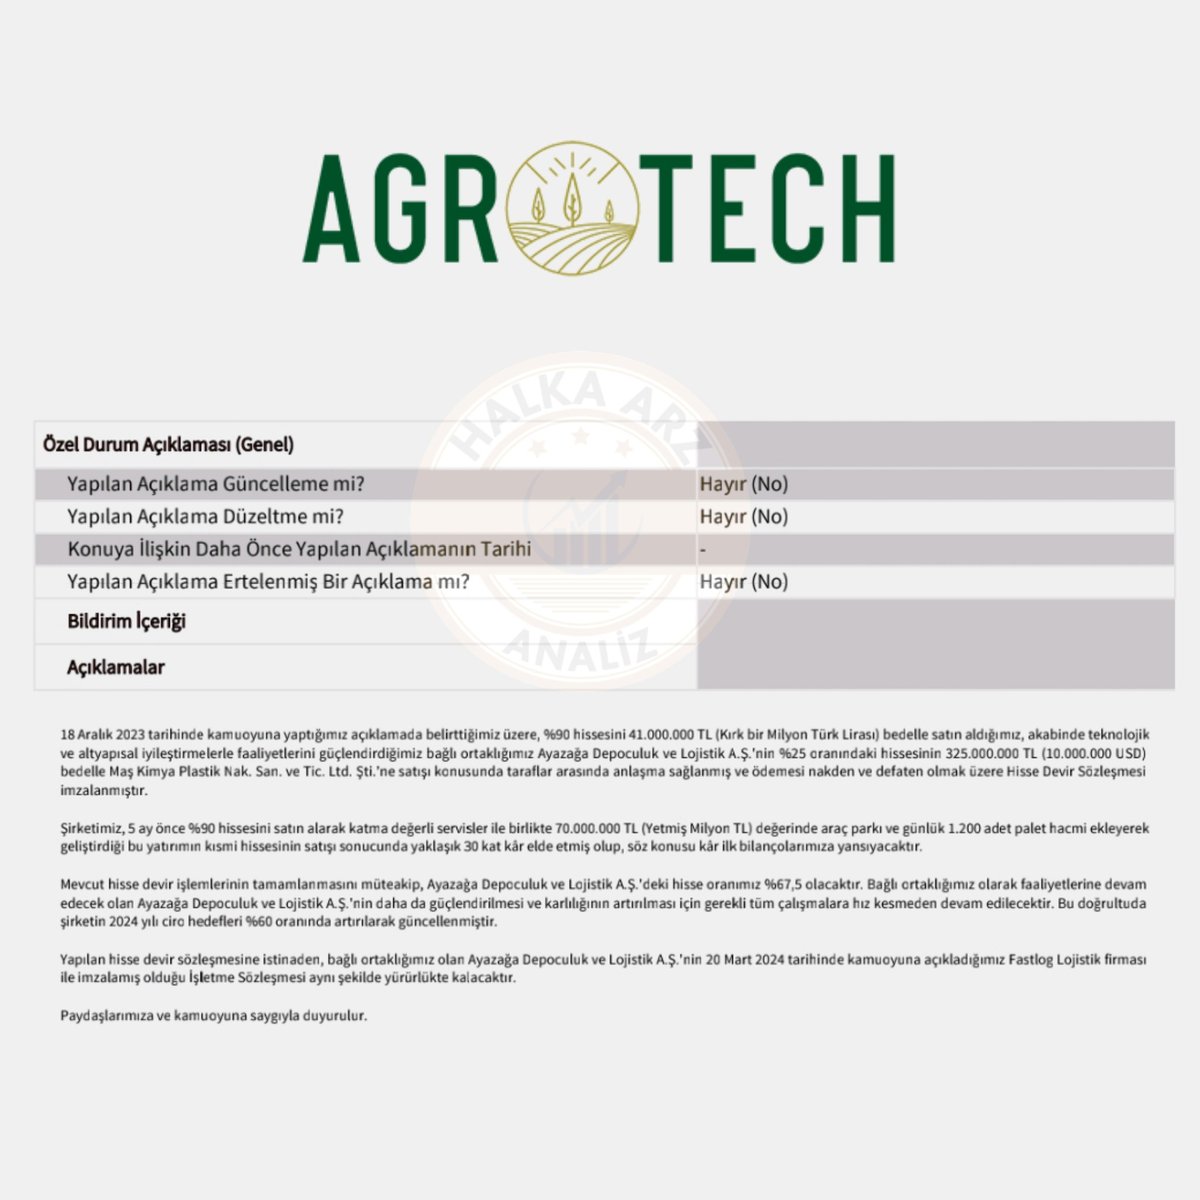 📢 Agrotech Yüksek Teknoloji #AGROT Aralık ayında %90 hissesini 41.000.000TL karşılığında satın alıp teknolojik ve altyapısal iyileştirmelerle faaliyetlerini güçlendirdiğini açıkladığı bağlı ortaklığı Ayazağa Depoculuk ve Lojistik'in %25 oranında hisselerini 325.000.000TL bedelle